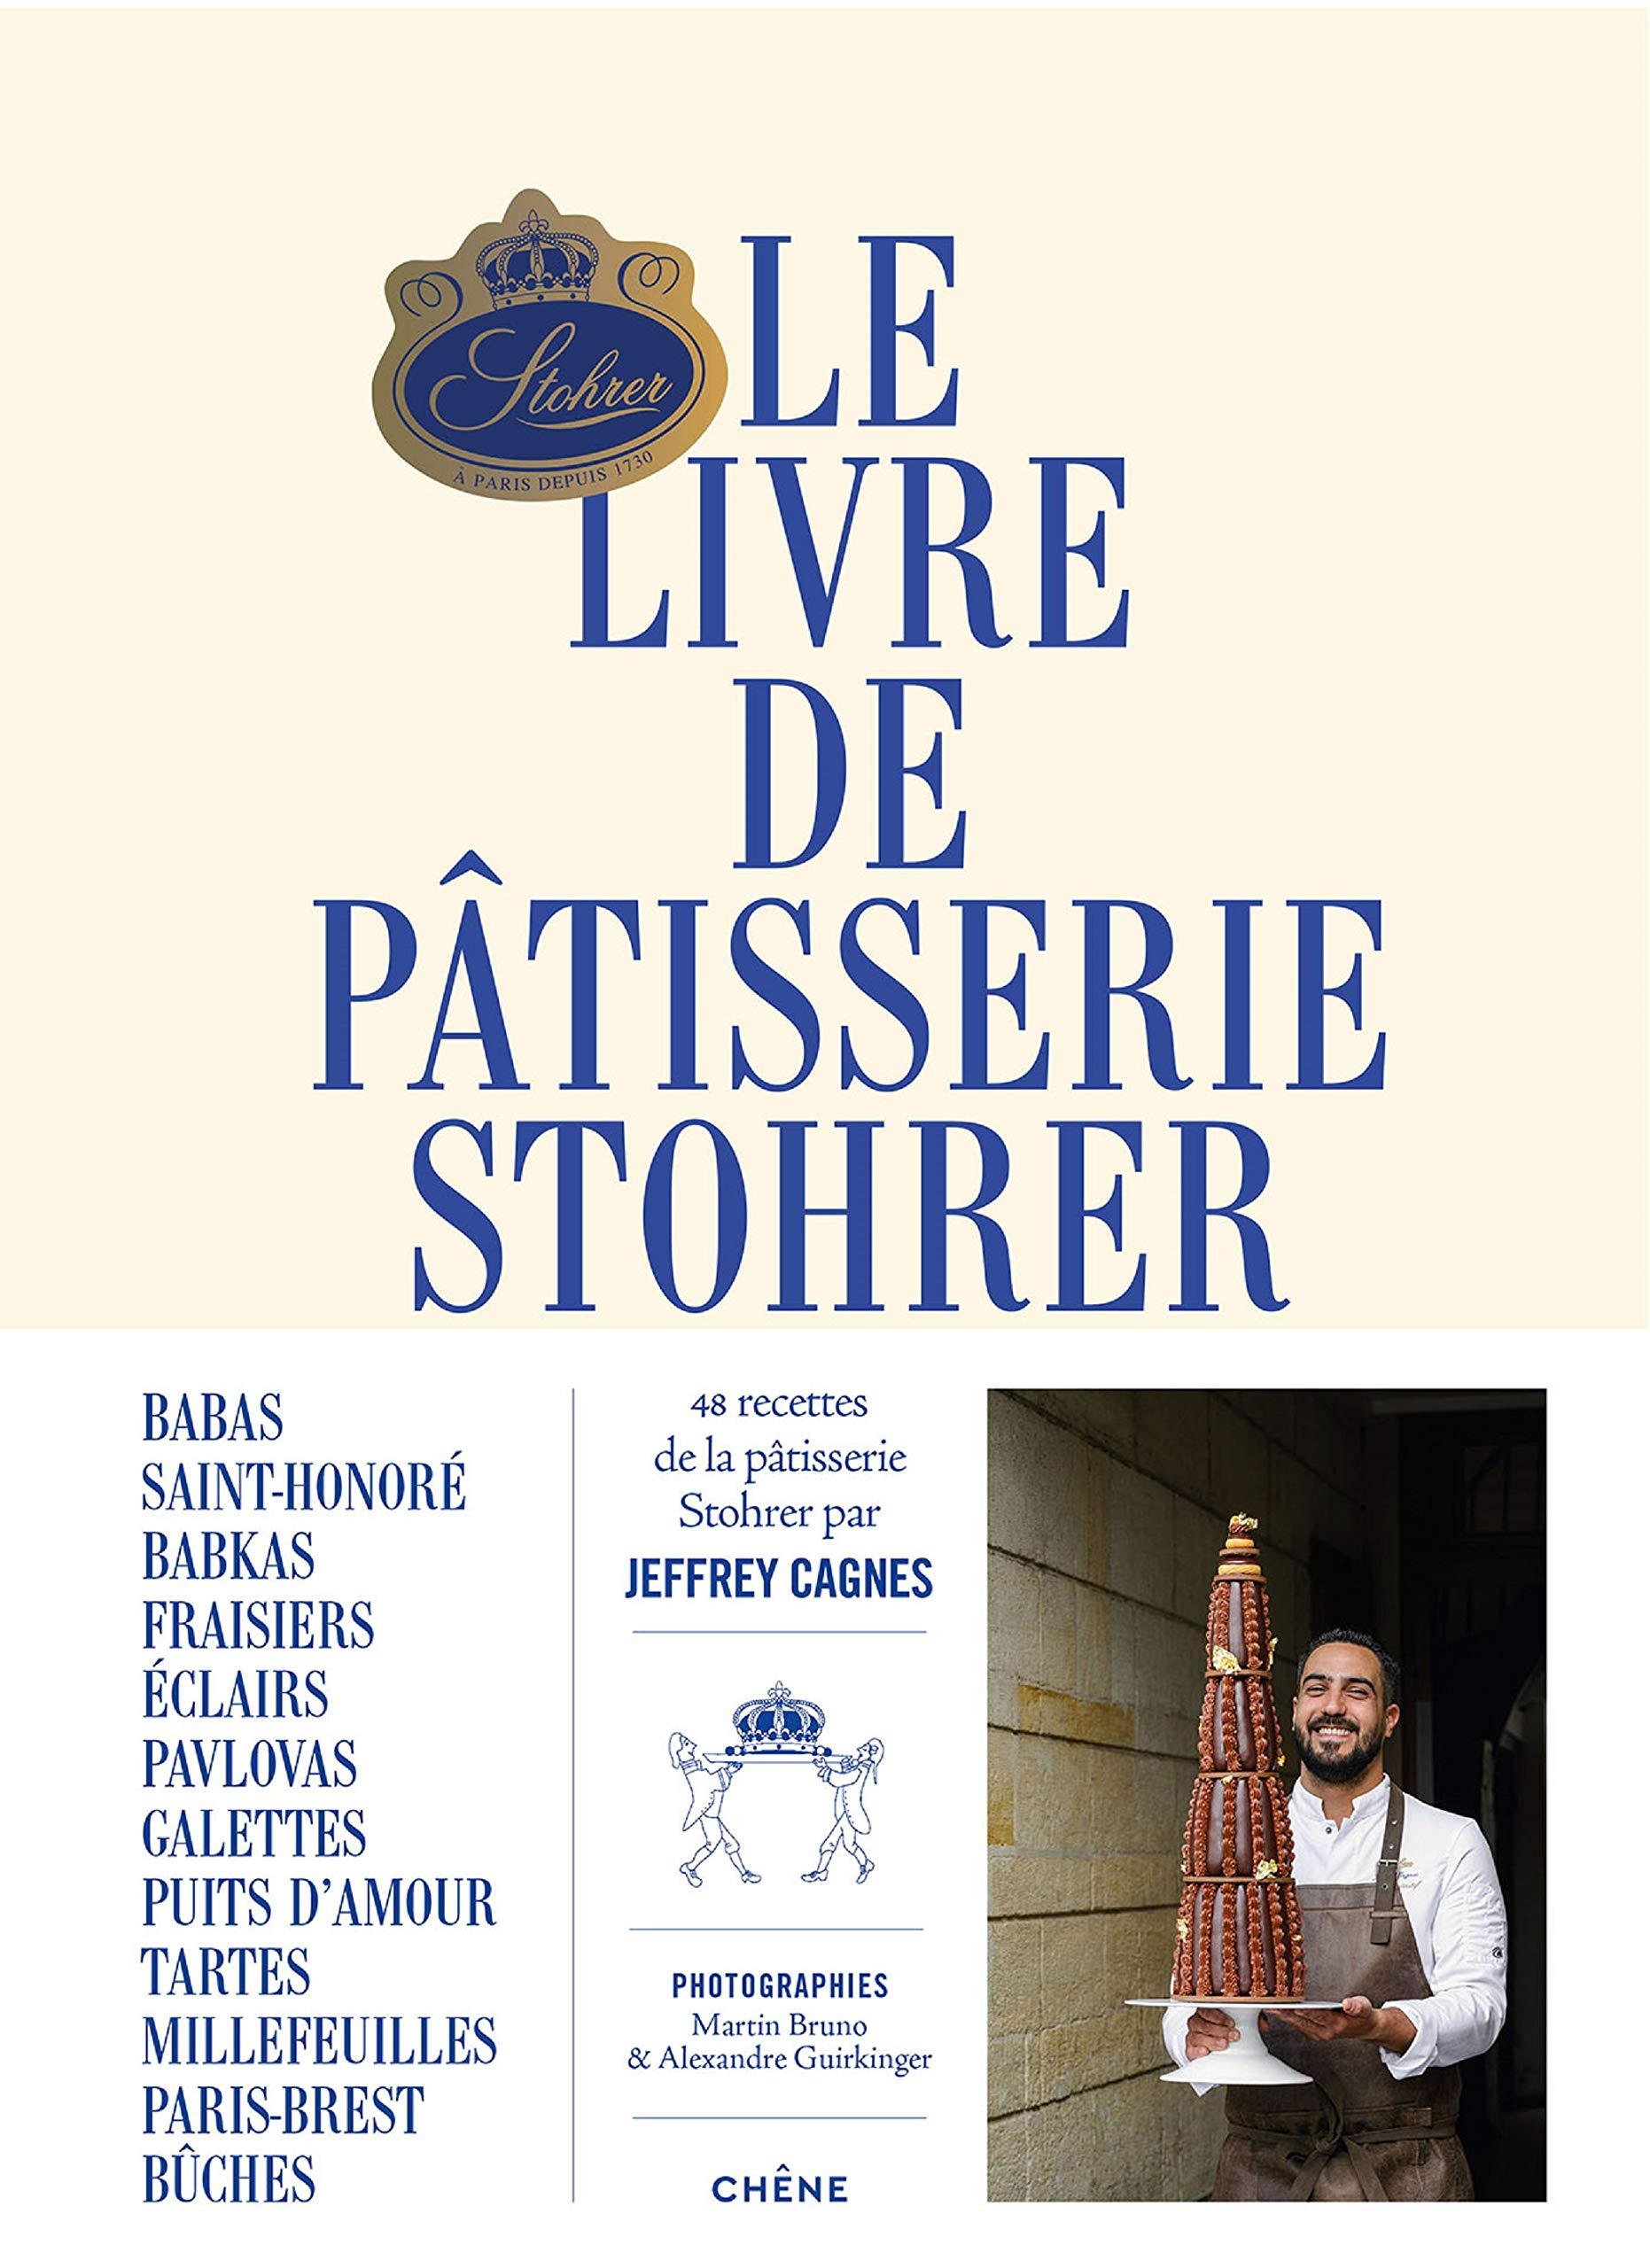 Le Livre de Patisserie Stohrer – Kitchen Arts & Letters